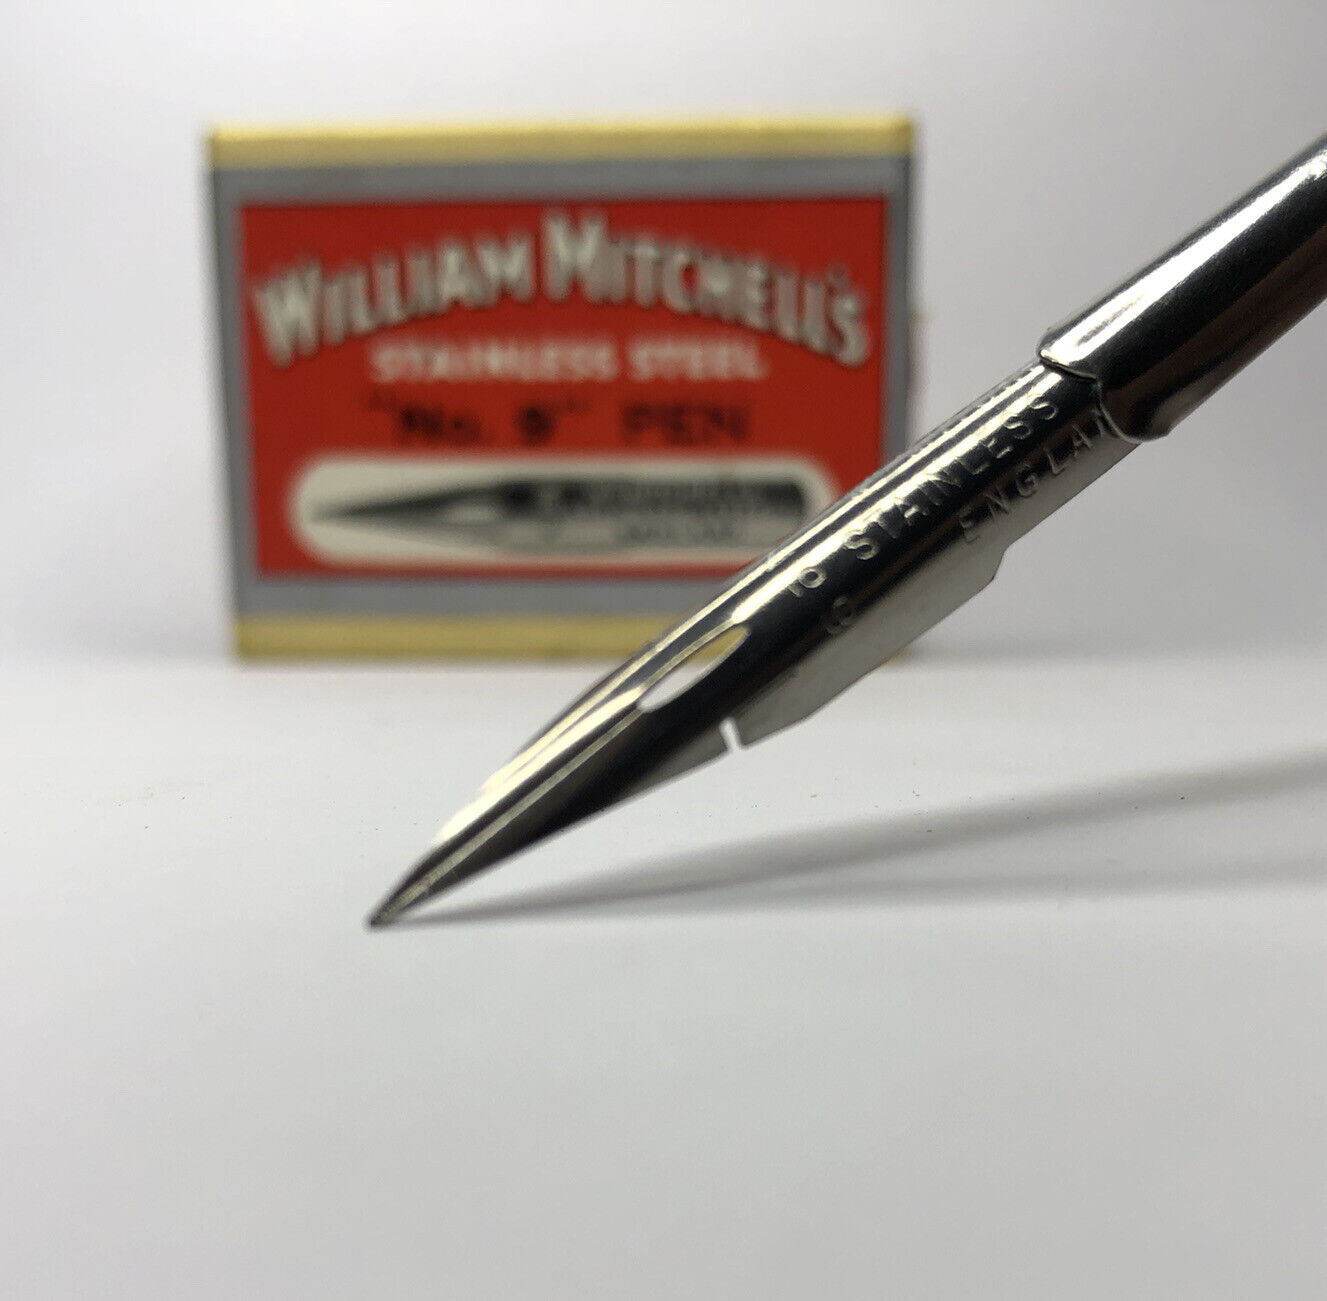 x2 William Mitchell's Stainless Steel "No.9" Pen 0221 Fine Nib Vintage Dip Pen William Mitchell - фотография #5